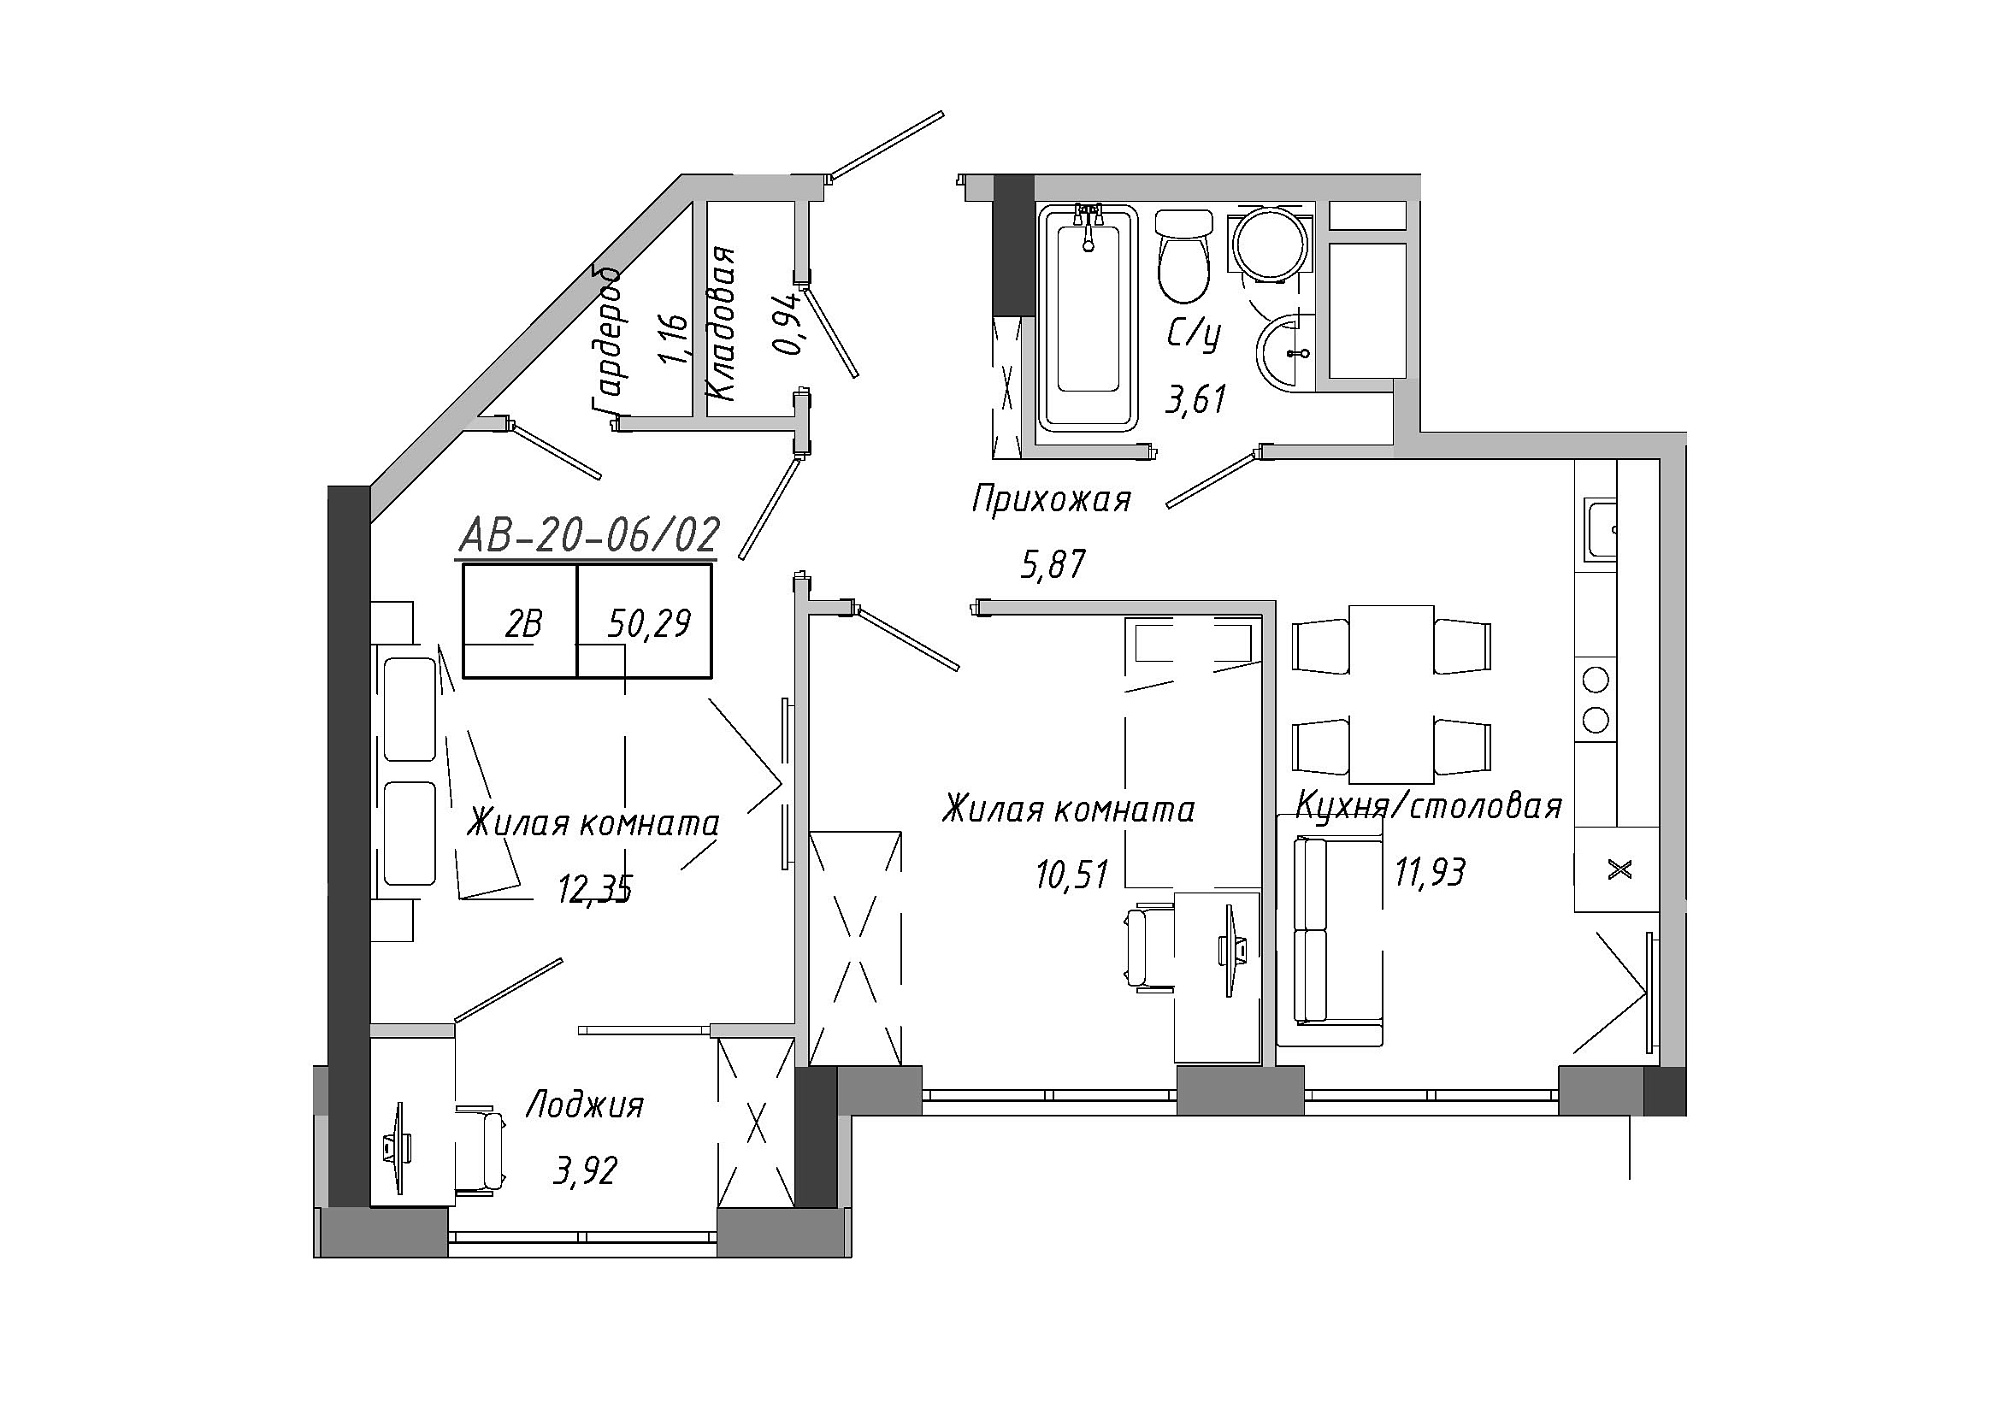 Планировка 2-к квартира площей 50.33м2, AB-20-06/00002.